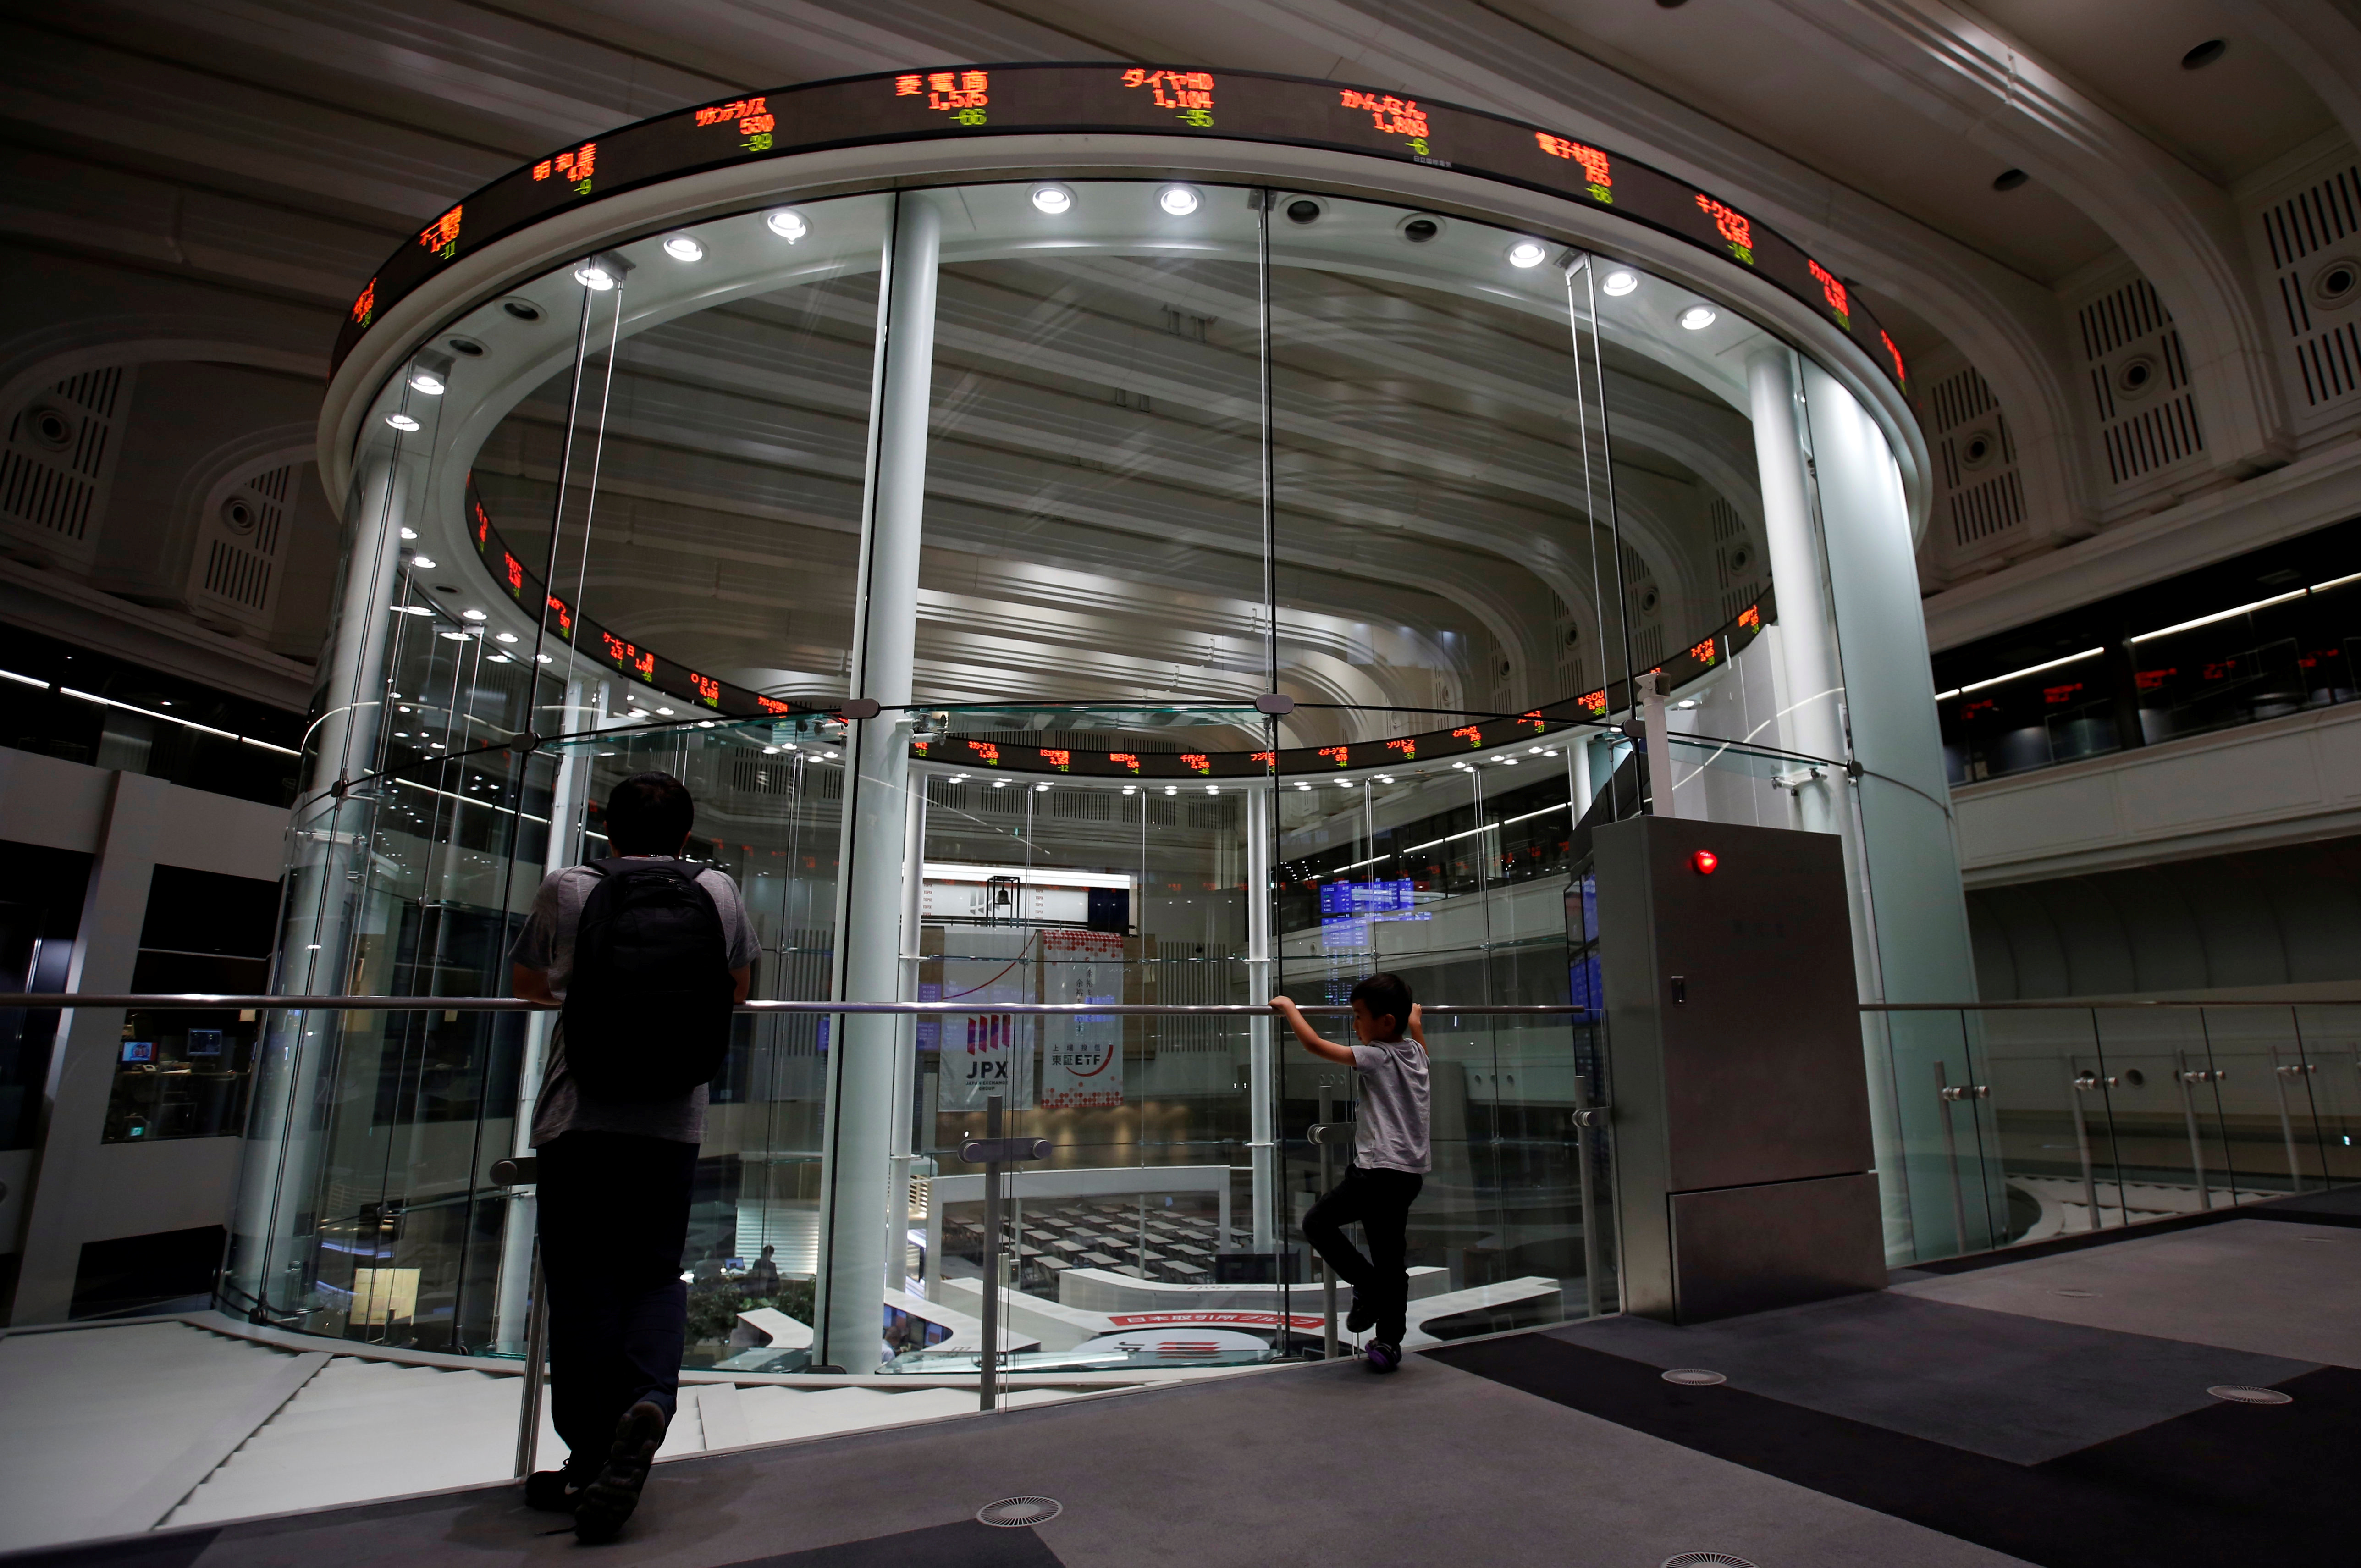 午前の日経平均は反発、米株高を好感 好決算銘柄に買い - ロイター (Reuters Japan)